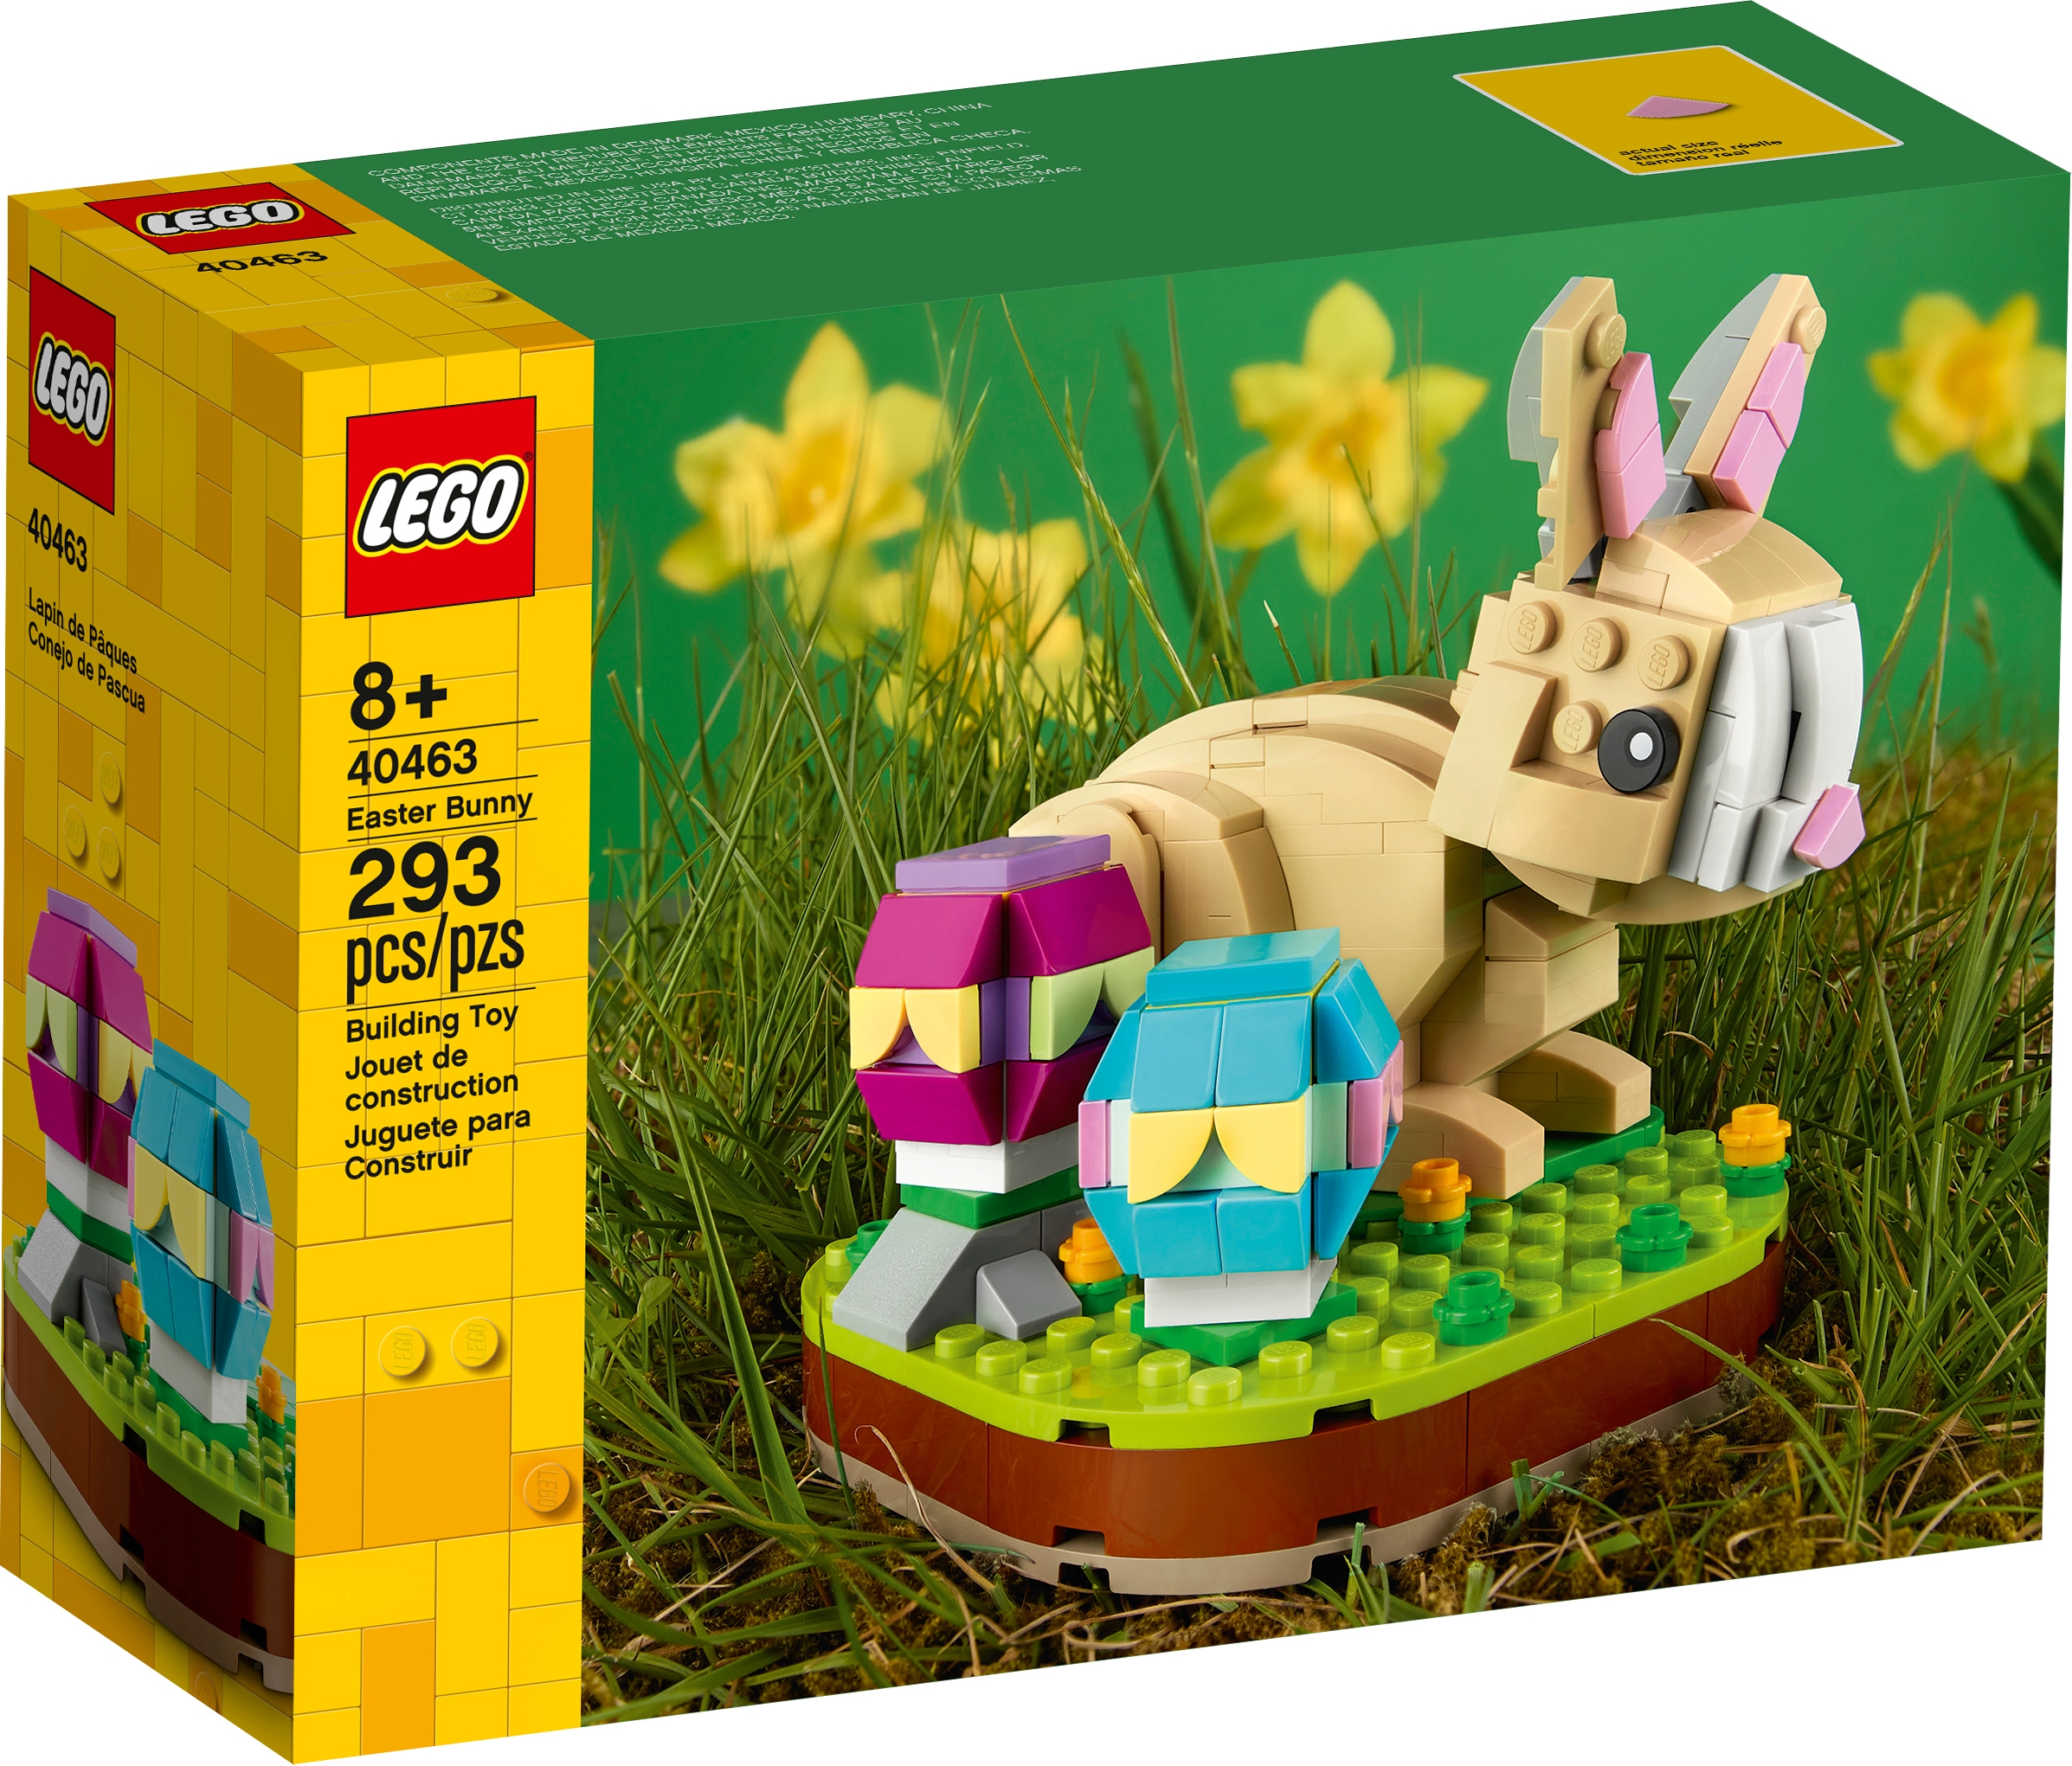 LEGO 5005249 Caseta de Conejo de Pascua 